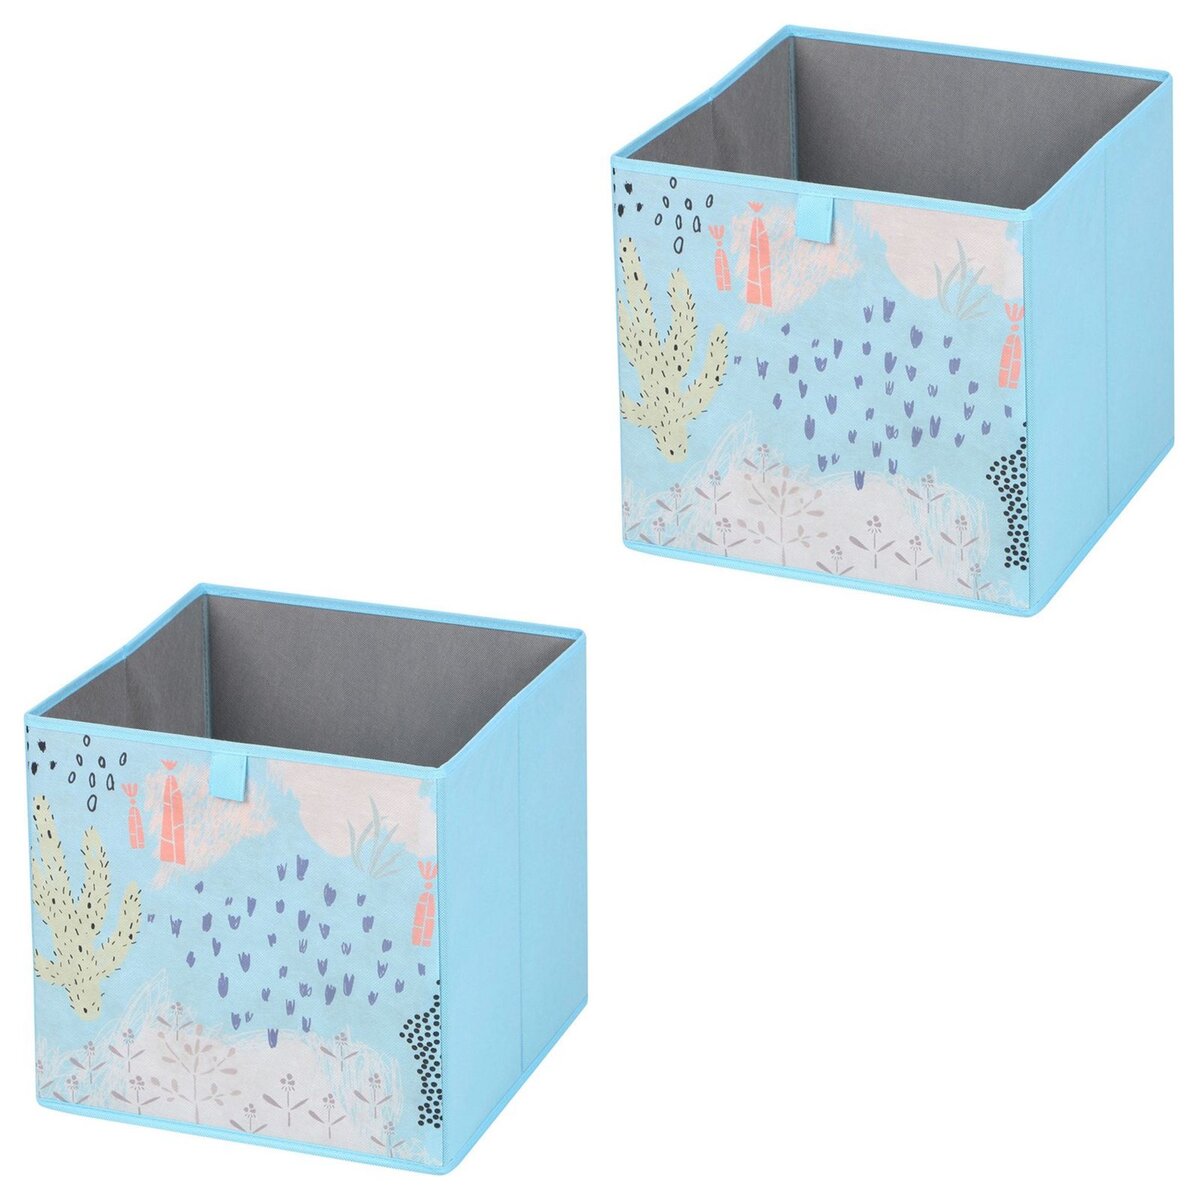 IDIMEX Lot de 2 boites de rangement en tissu bleu FLOWER MORNING, cube de  rangement pour enfant ou adulte dim 32 x 32 x 32 cm, décor floral pas cher  